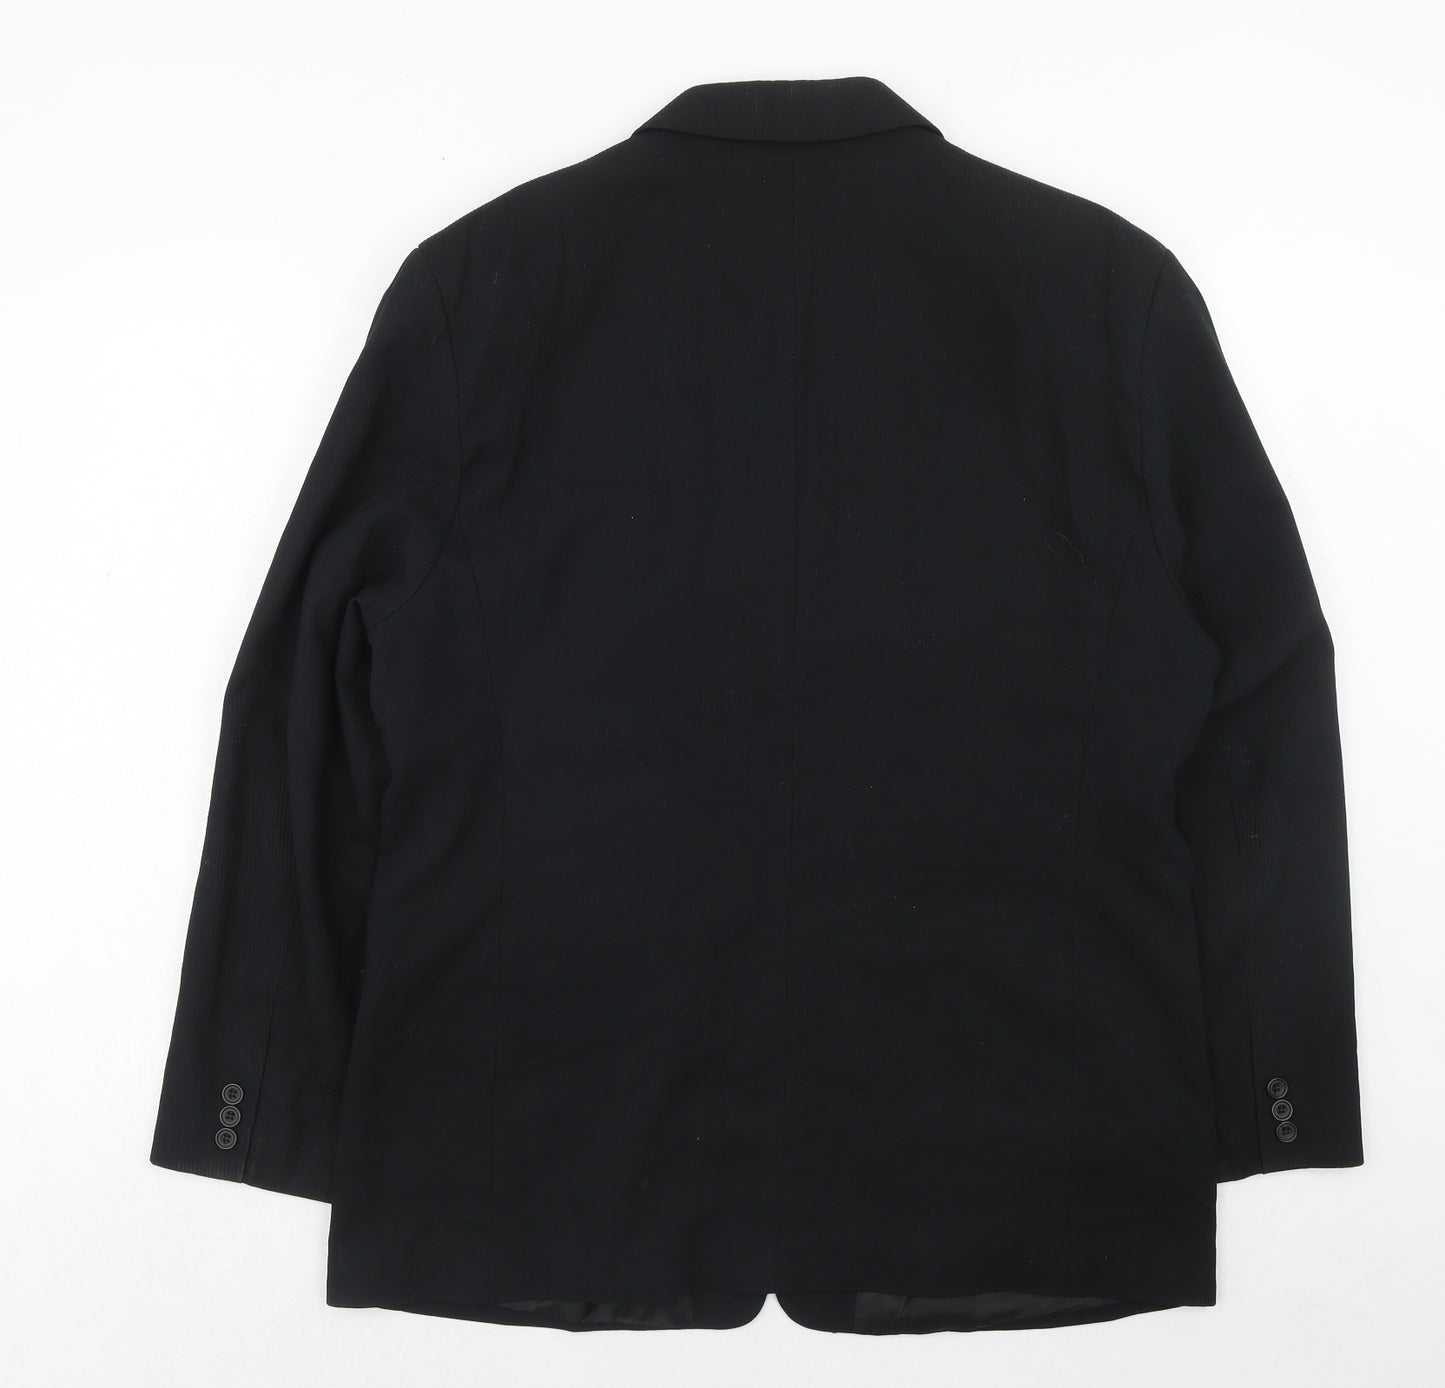 Kilinch Mens Black Polyester Jacket Suit Jacket Size 46 Regular